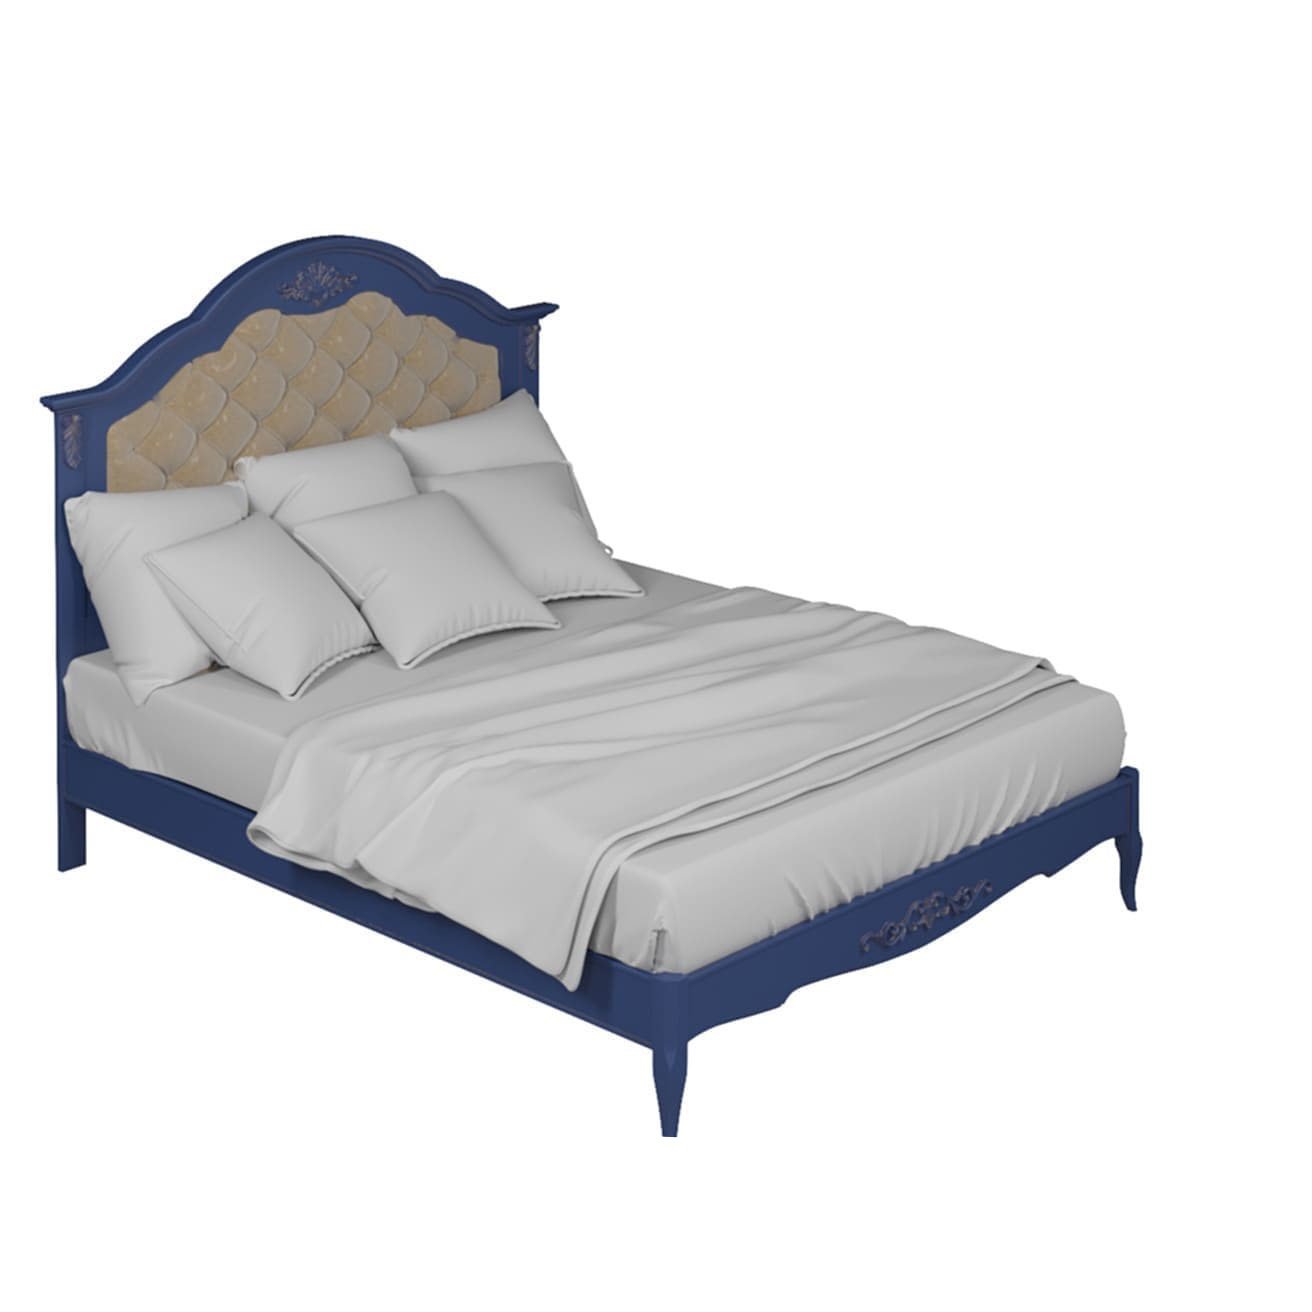 Кровать Aletan Provence, односпальная, 120x200 см, цвет: синий (B212IN)B212IN